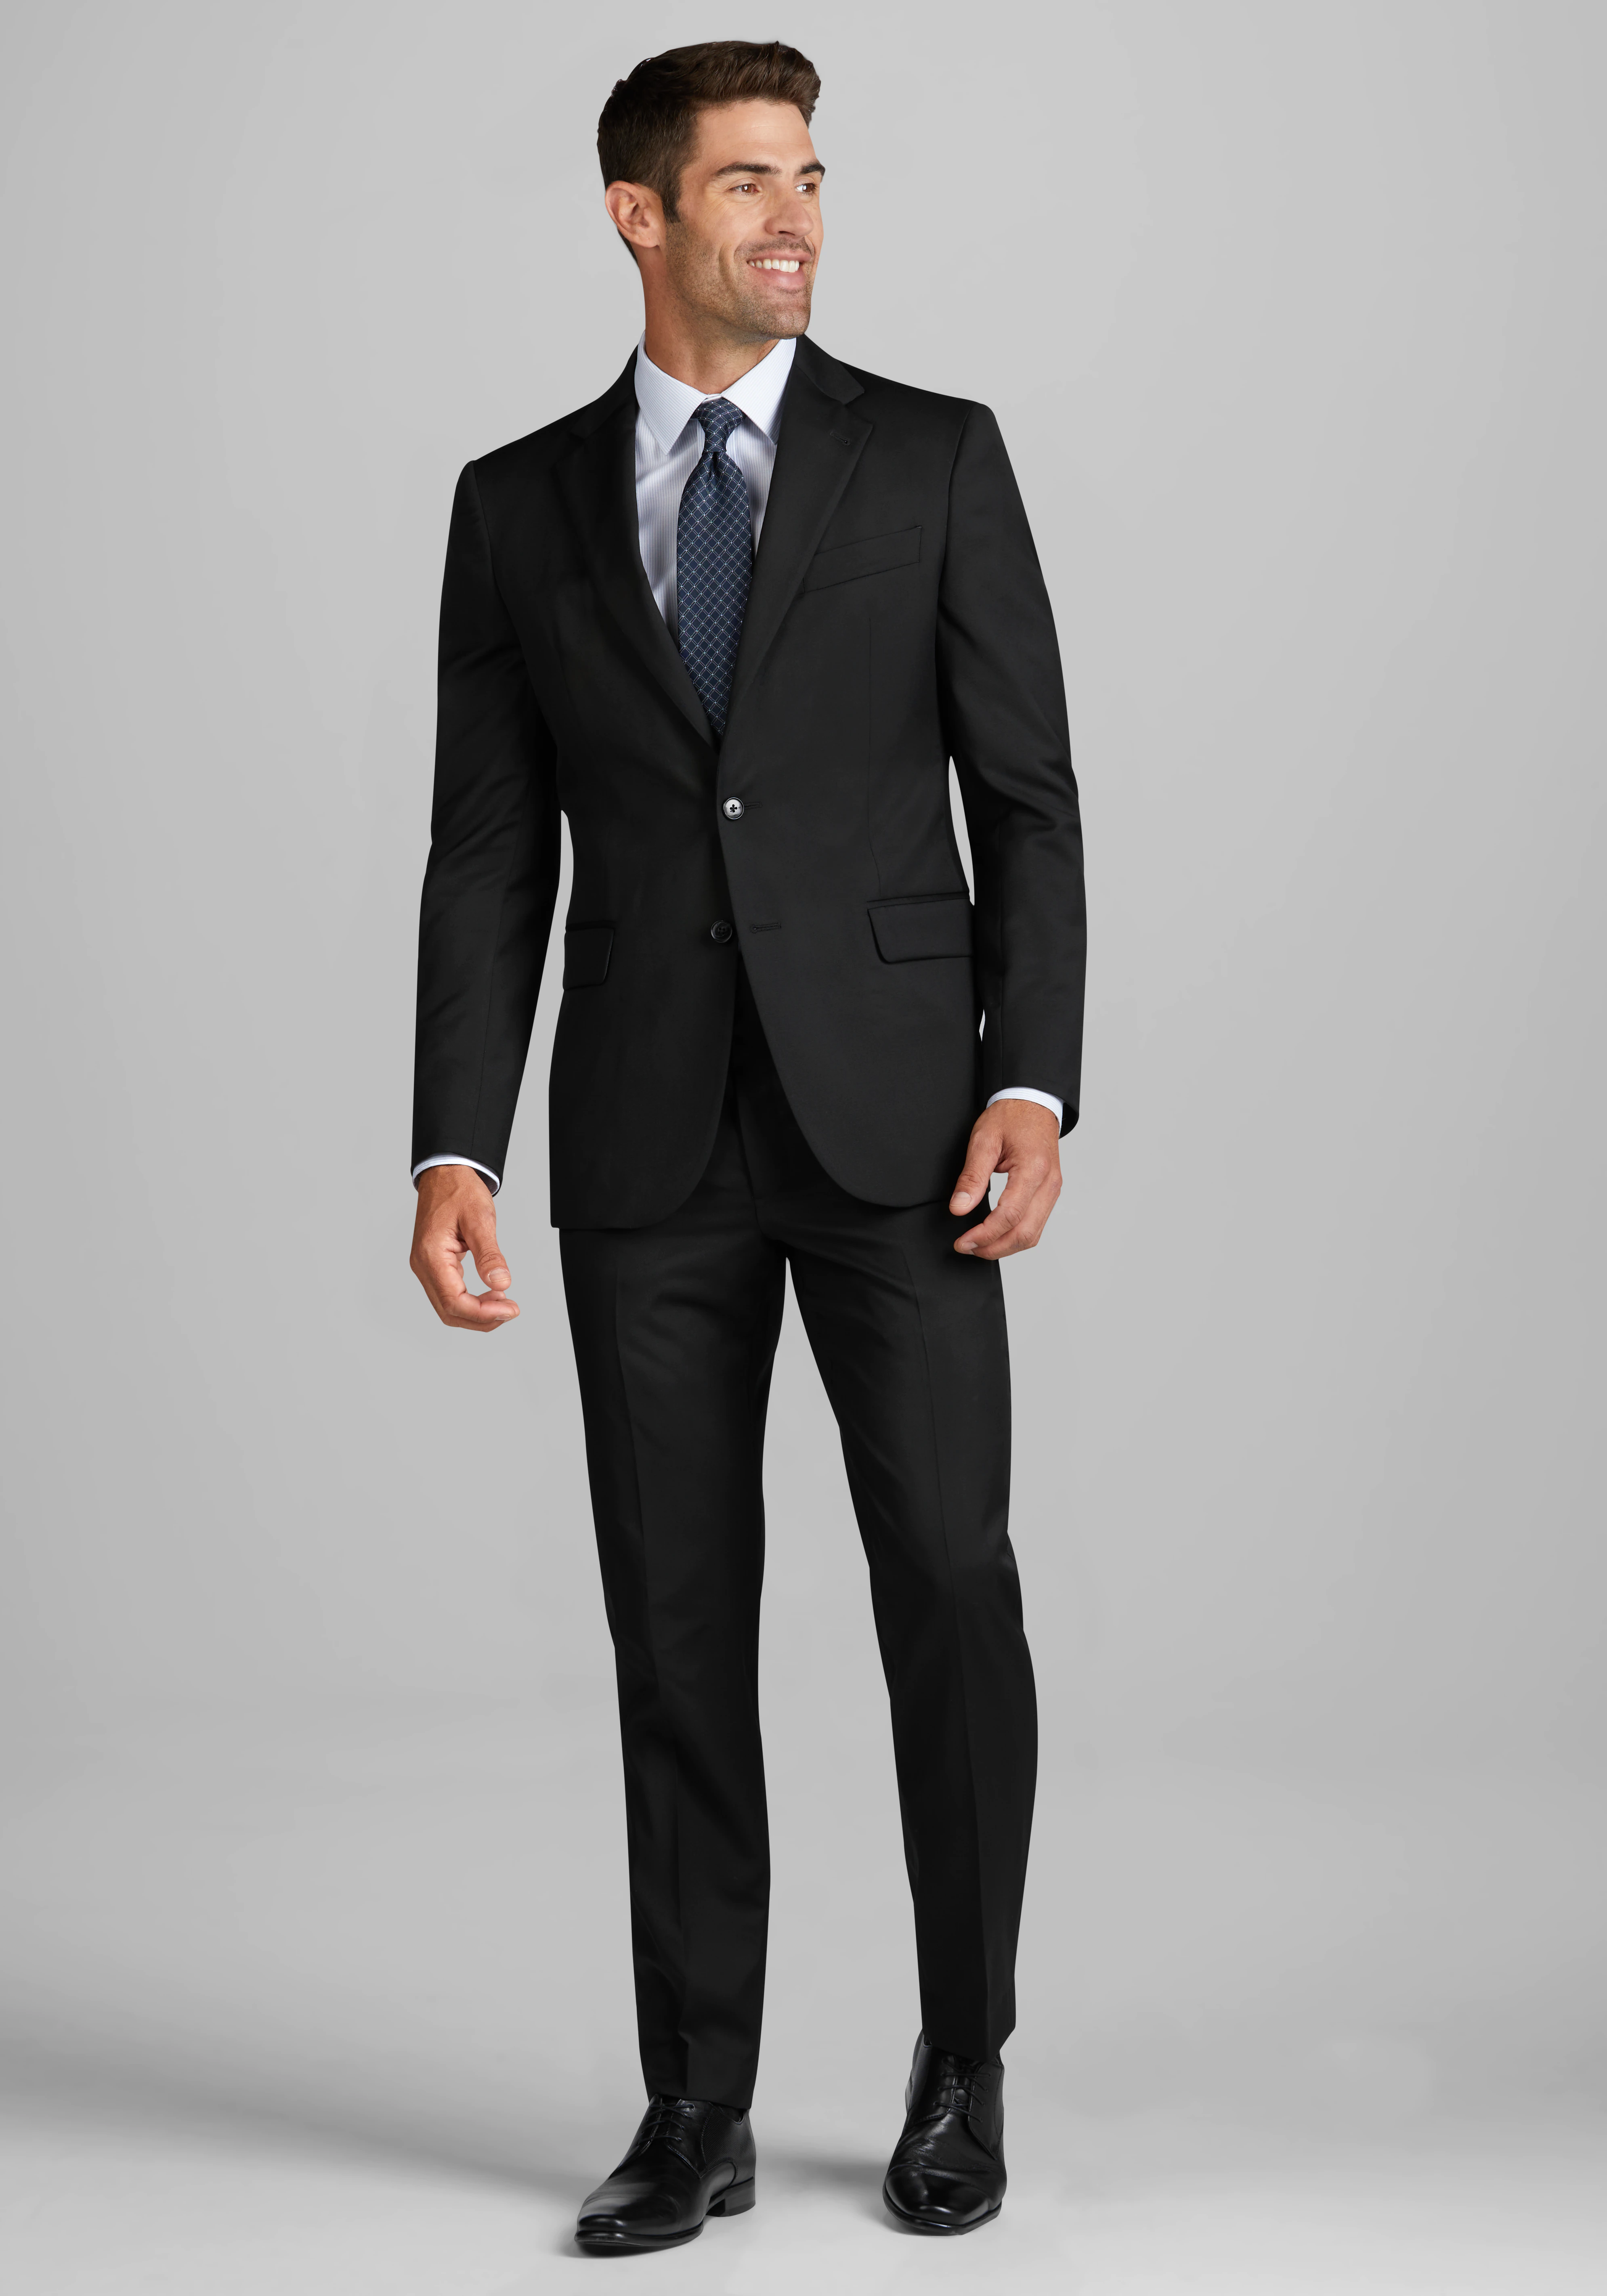 Joseph Abboud Tailored Fit Suit Separates Jacket - Joseph Abboud Suits